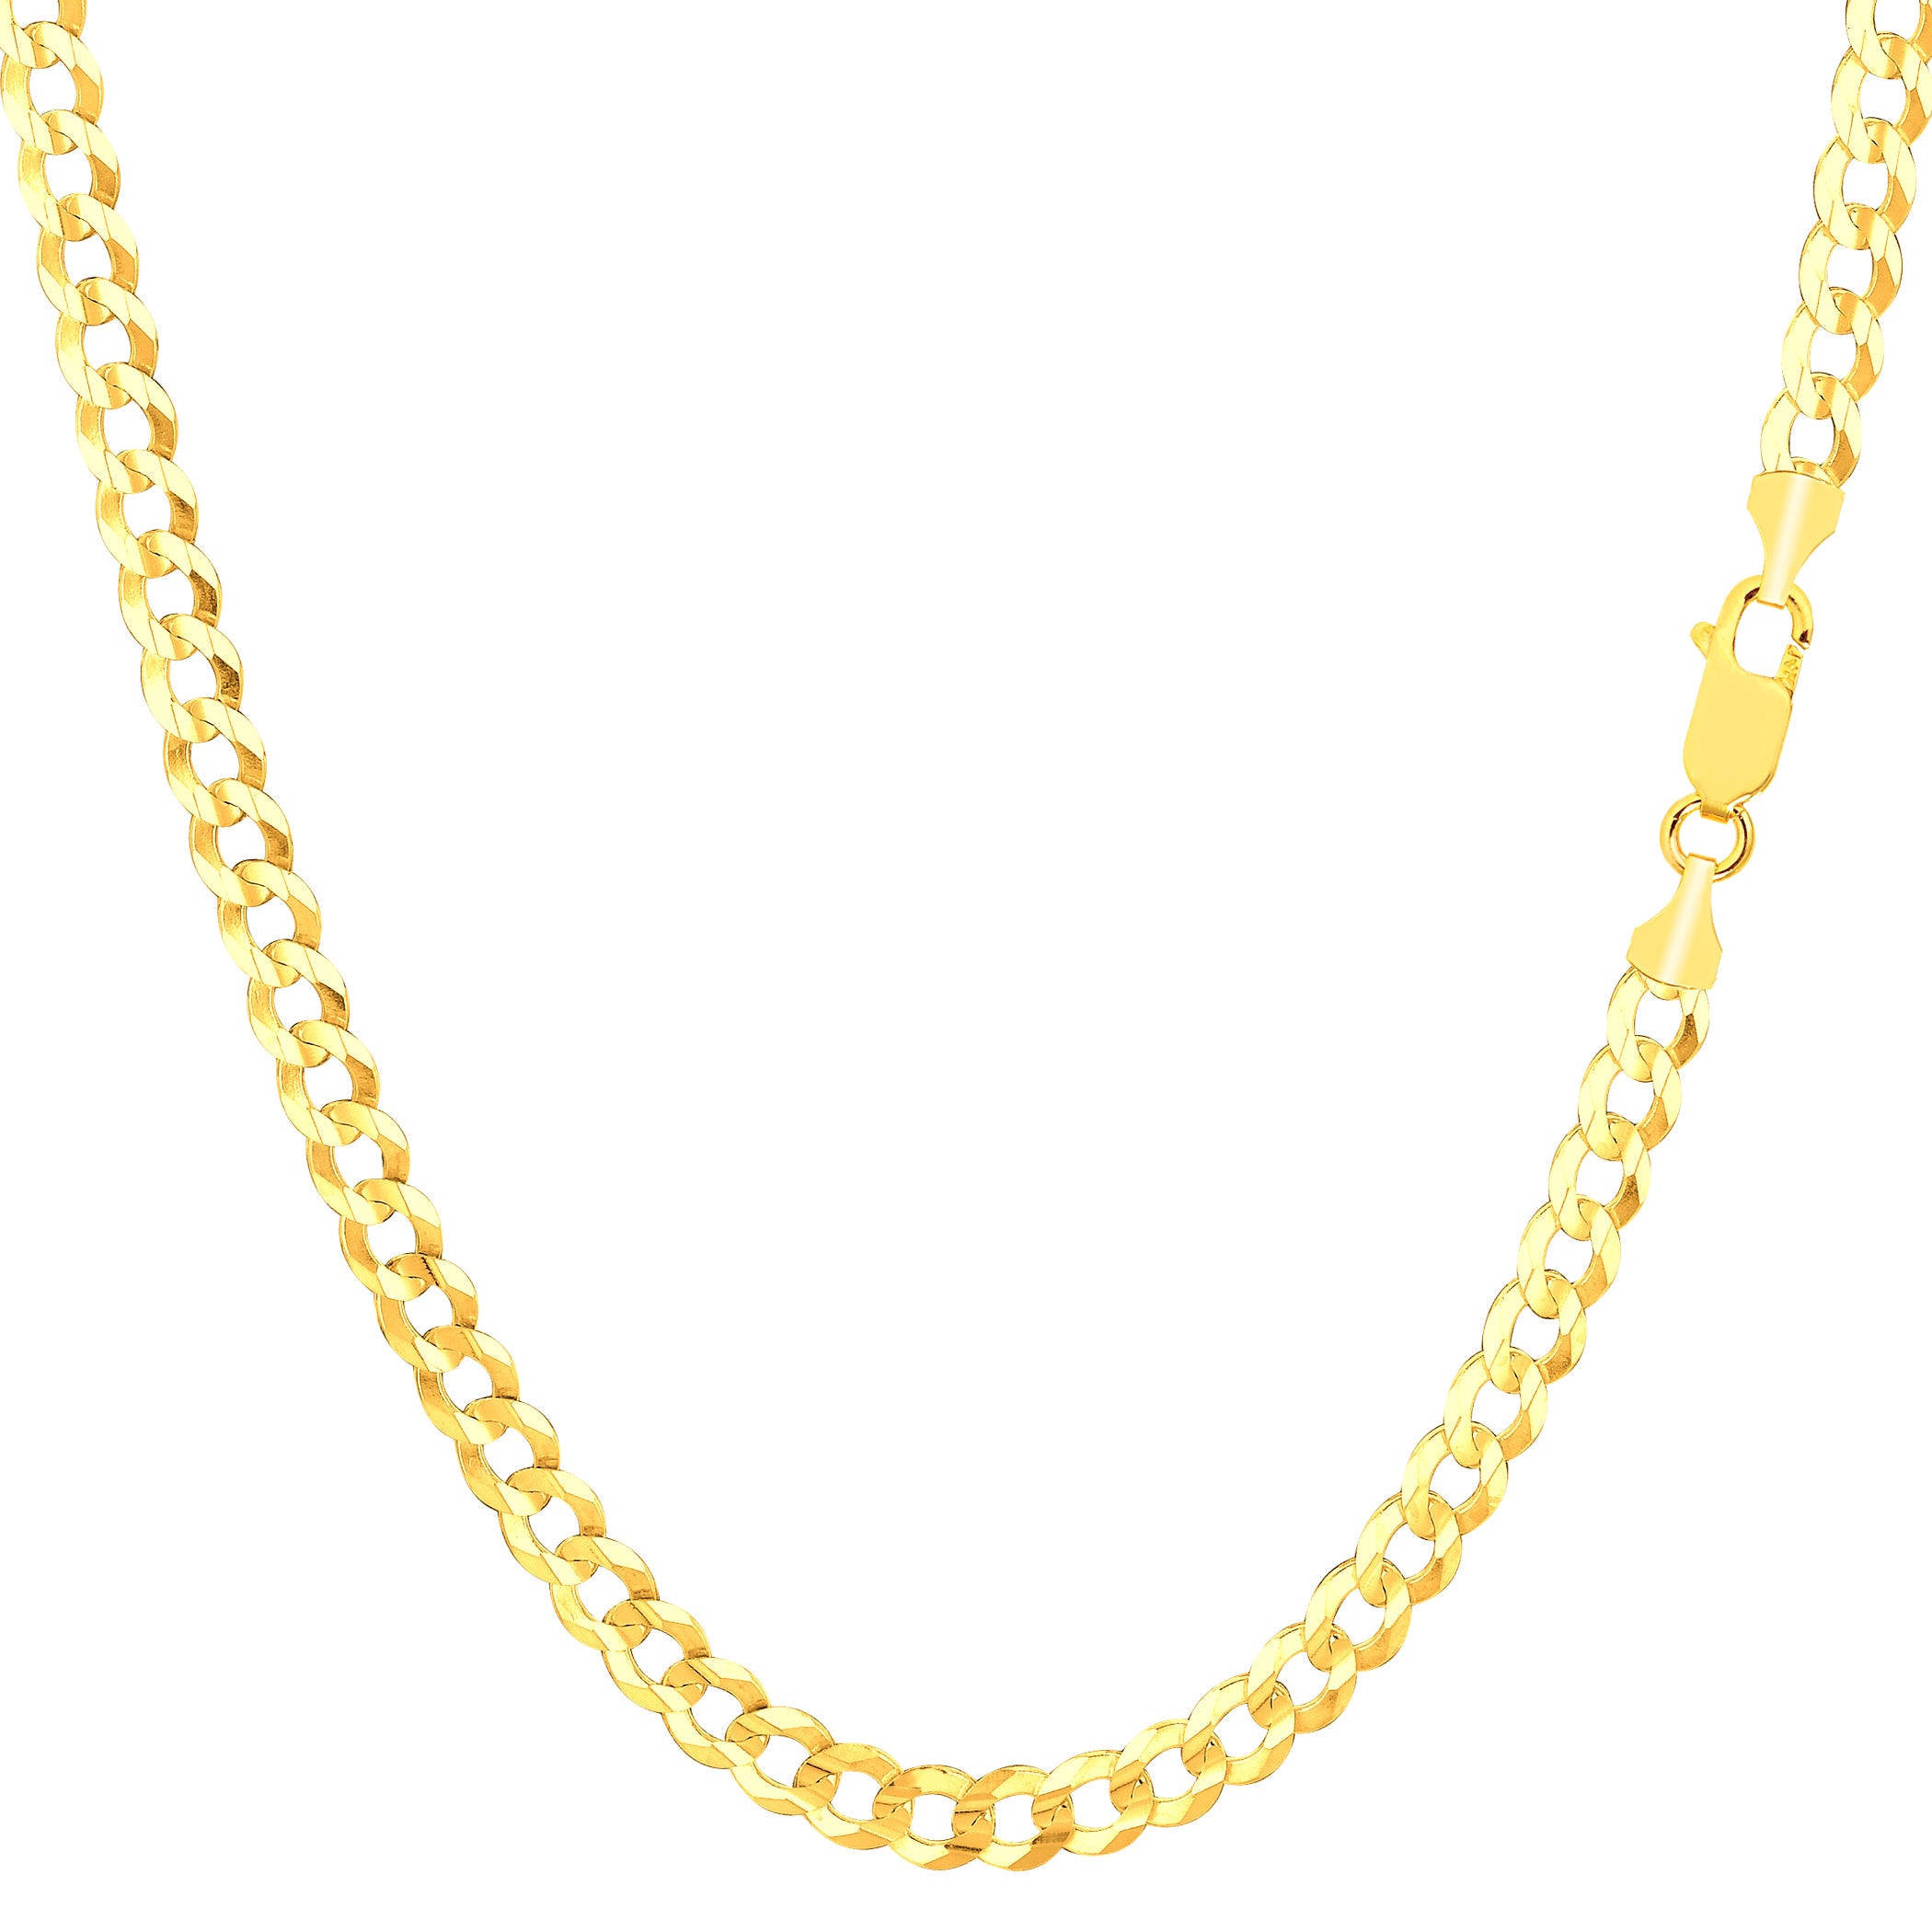 Pulsera de cadena curvada sólida con relleno de oro amarillo de 14 quilates, joyería fina de diseño de 3,6 mm y 8,5 pulgadas para hombres y mujeres